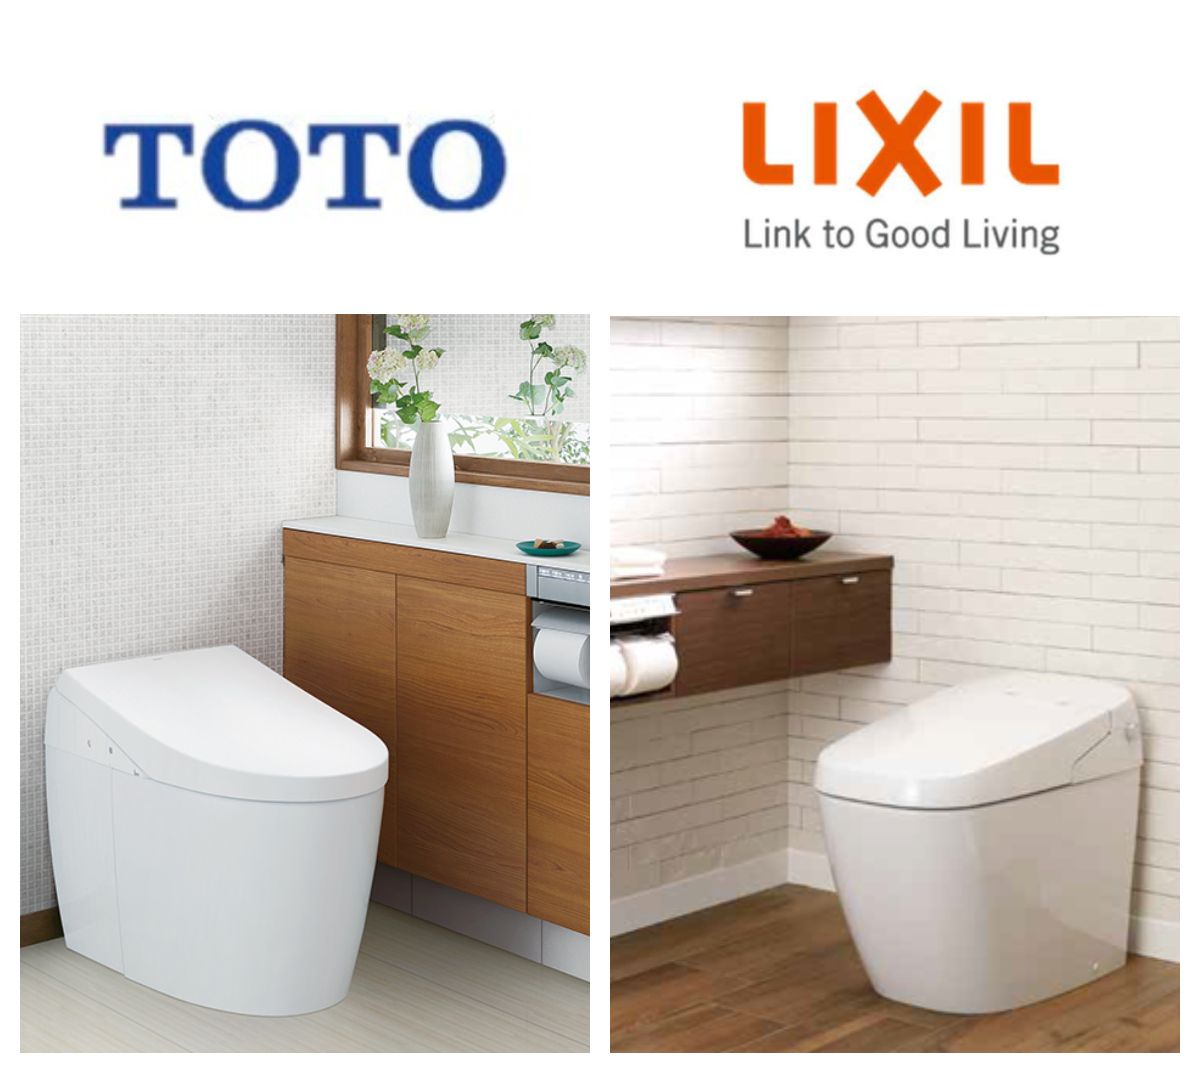 トイレ TOTOとLIXILの比較【PART1】トイレリフォームでお困りの方へ ネオレスト サティス